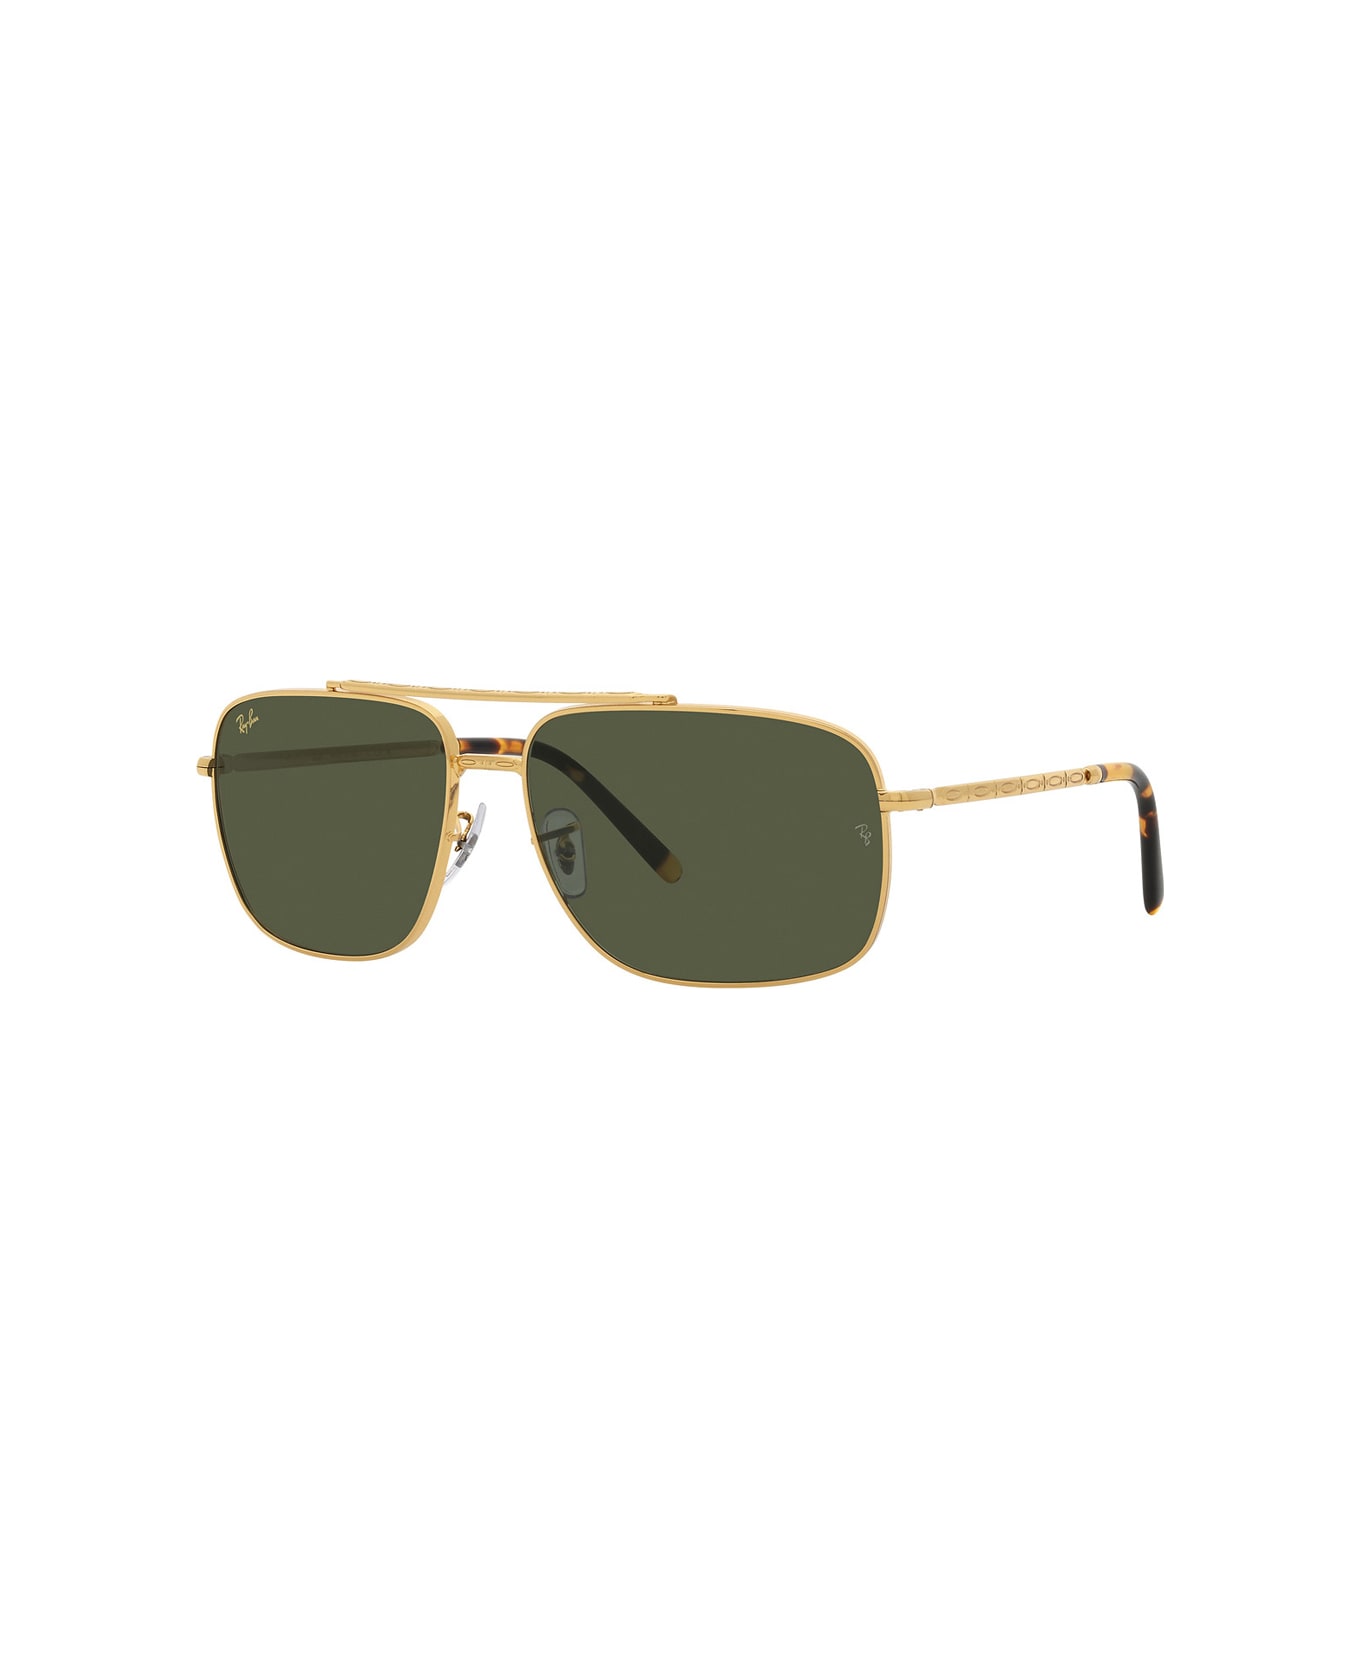 Ray-Ban Rb3796 Sunglasses - Oro サングラス